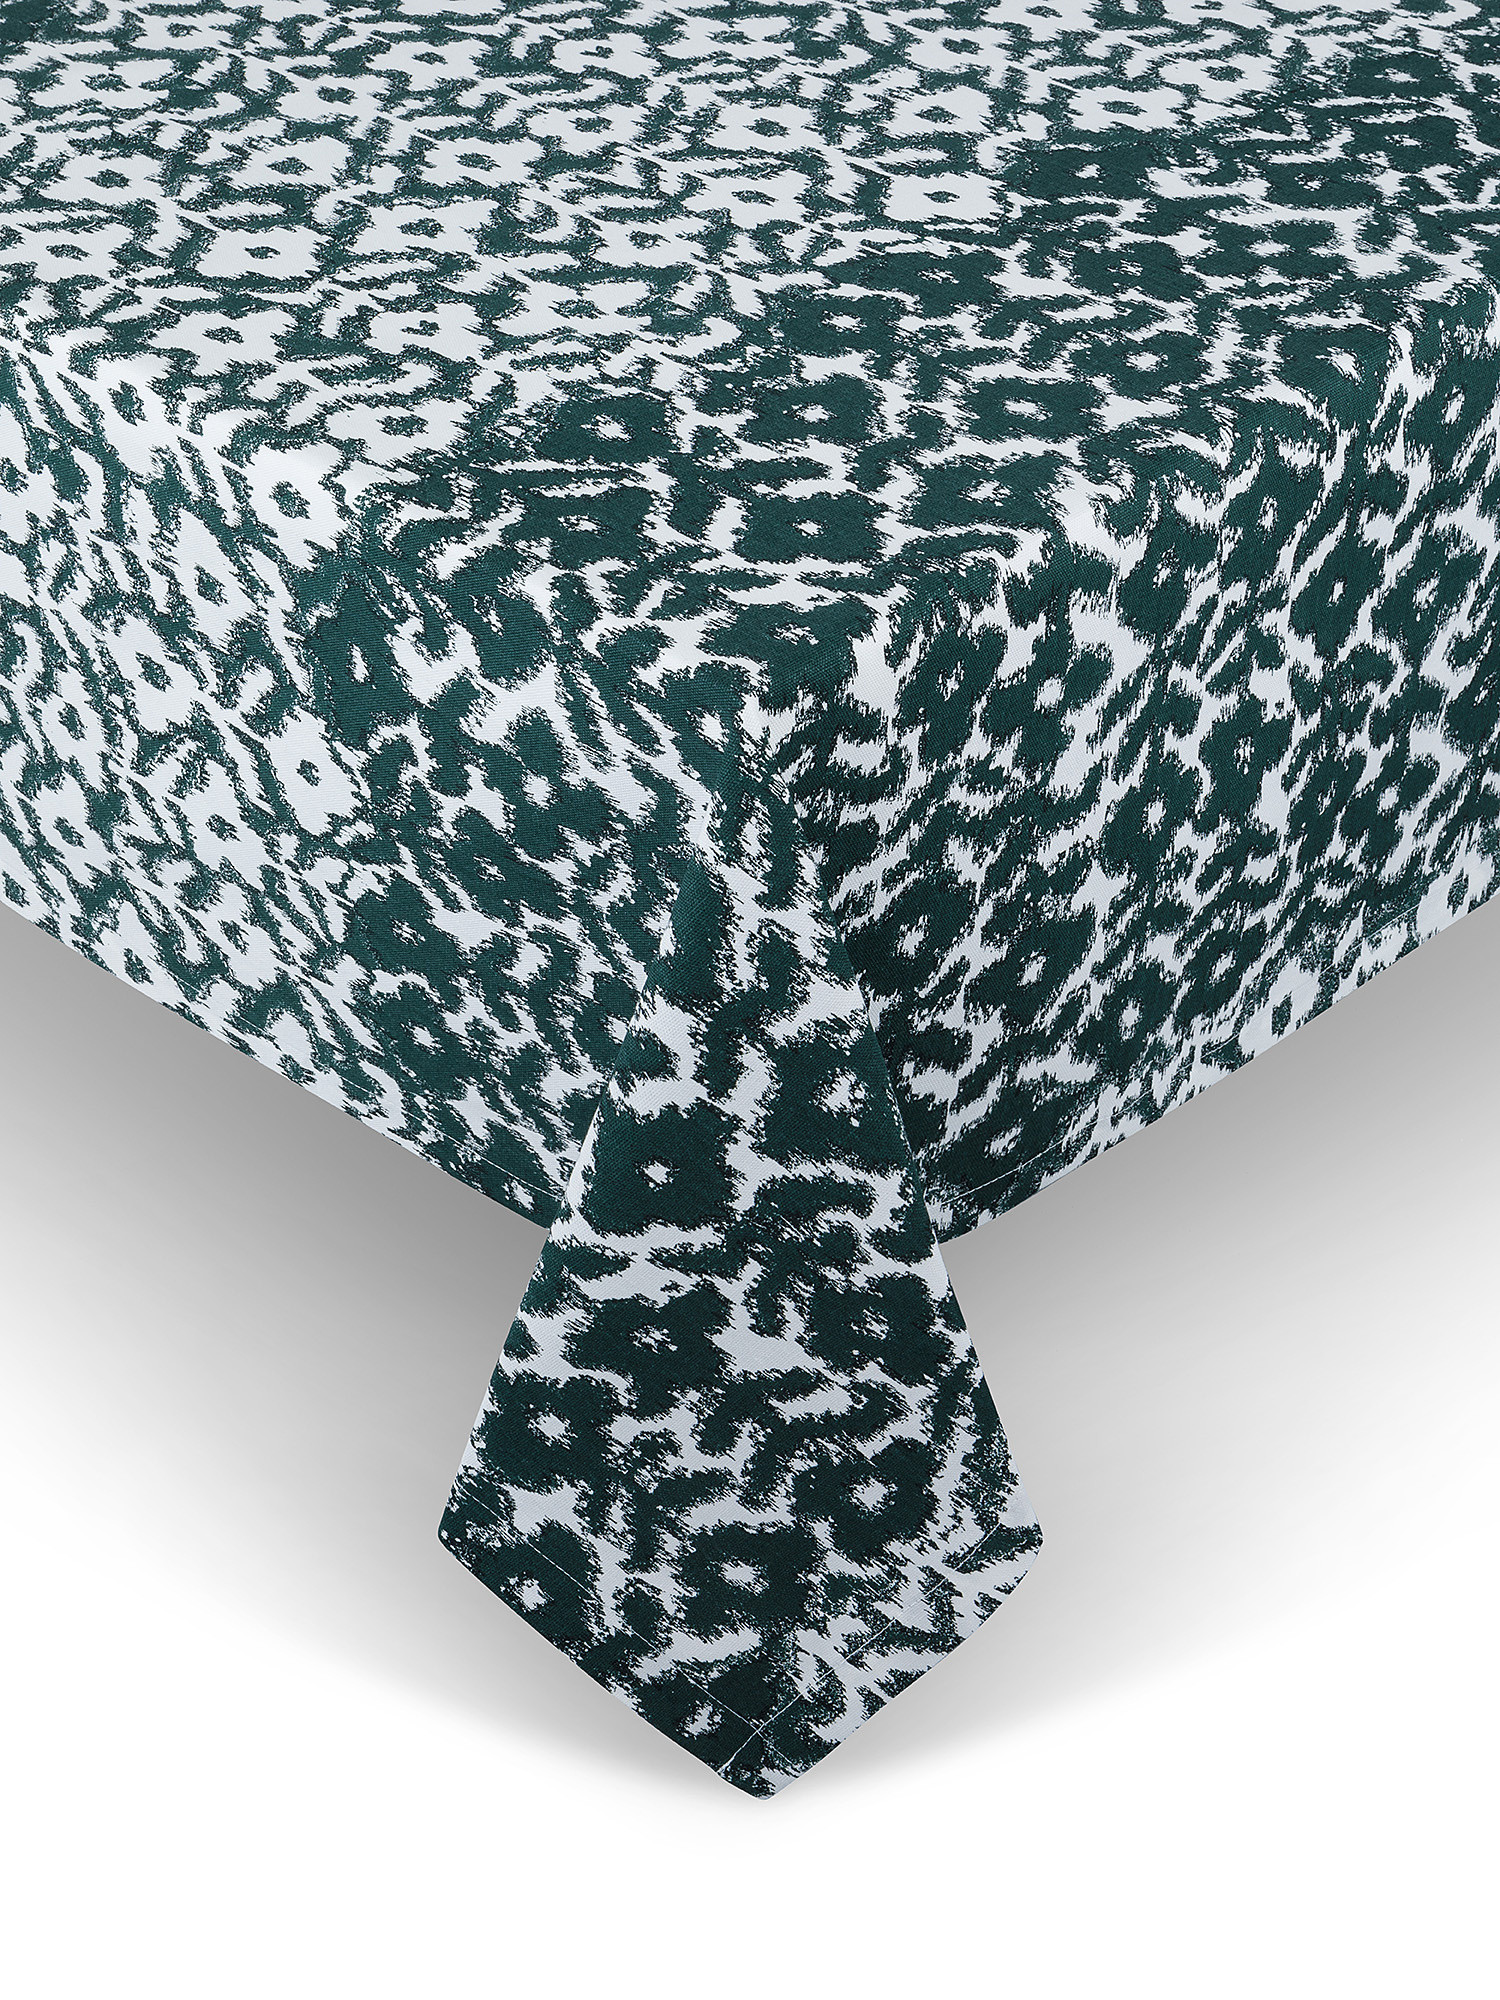 Tovaglia puro cotone stampa bosco verticale, Verde, large image number 0